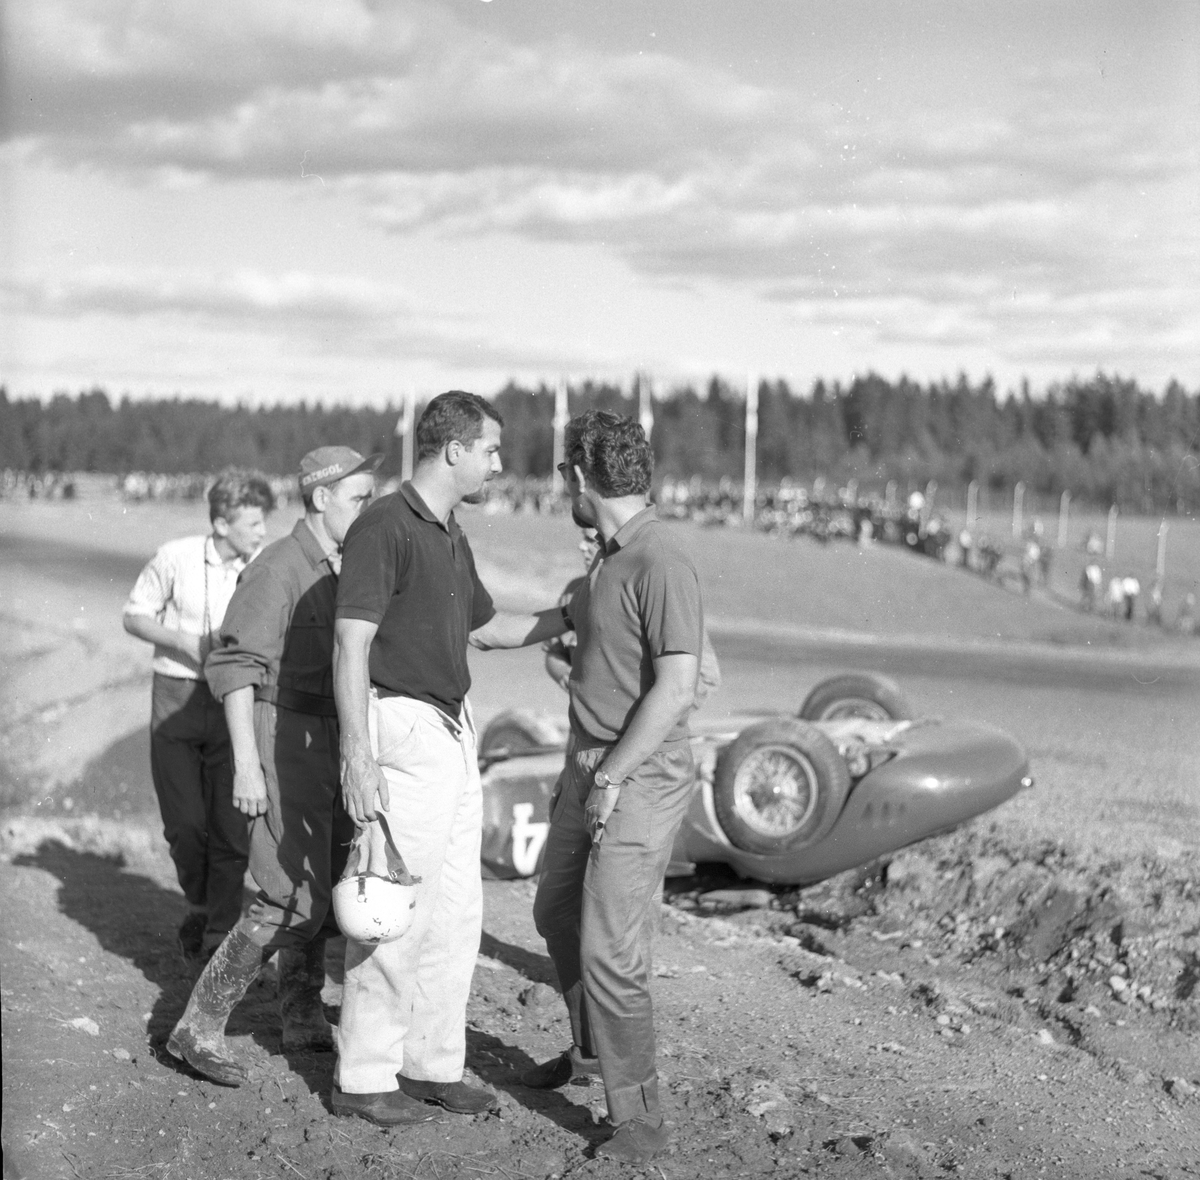 Serie bilder av Joakim Bonnier, motorsport. Kanonløpet 1958.